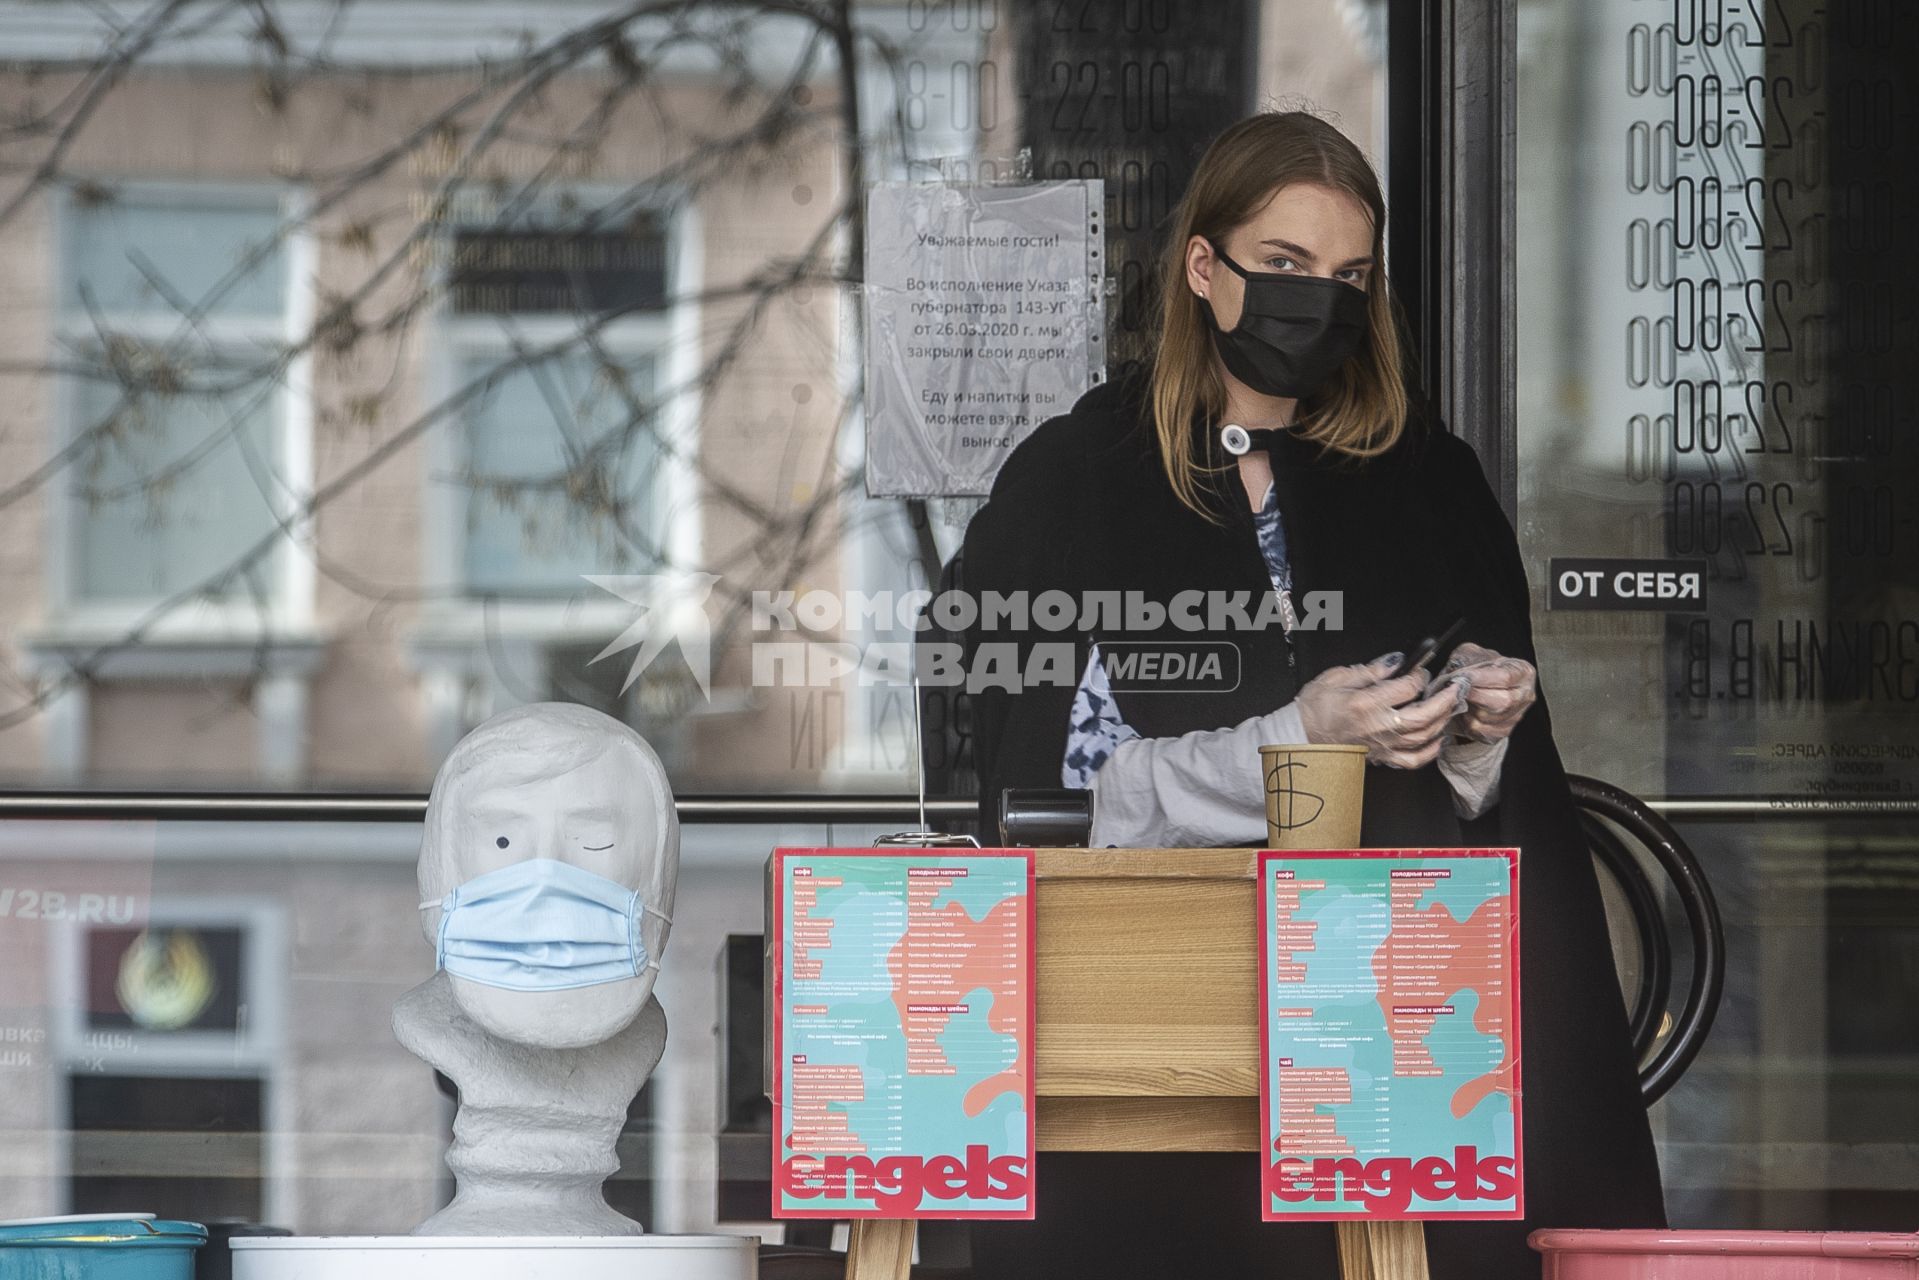 Екатеринбург. Сотрудница кофейни в медицинской маске работающей на вынос, во время эпидемии коронавирусной инфекции COVID-19